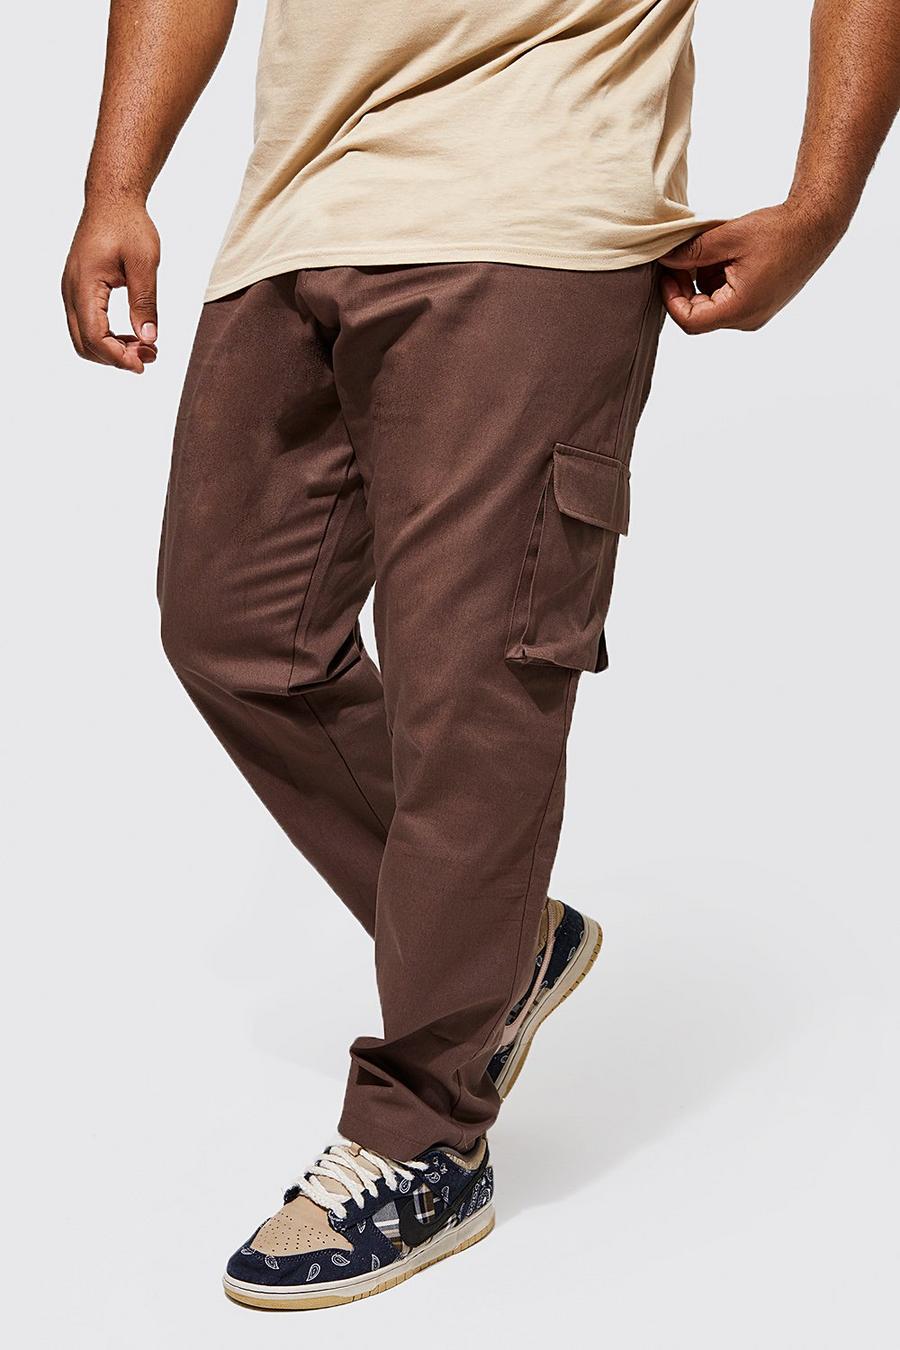 שוקולד marrón מכנסי צ'ינו דגמ'ח בגזרה צרה, מידות גדולות